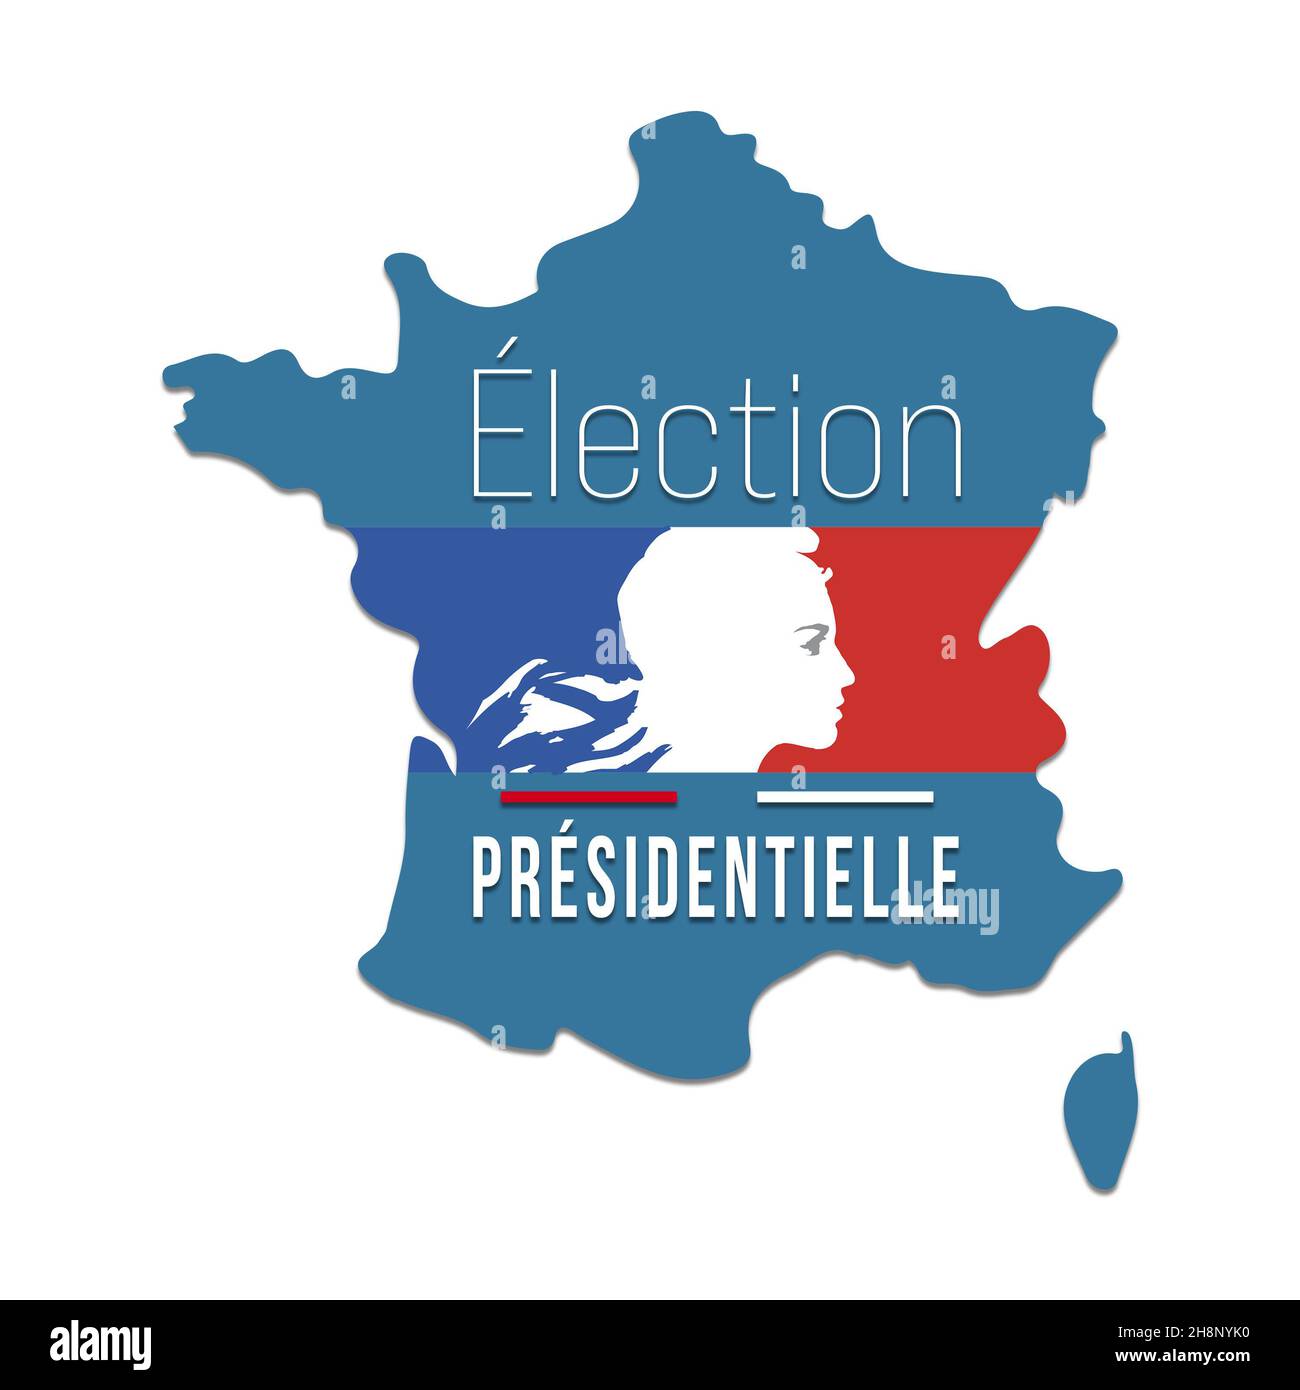 Election présidentielle France 2022 - vote des 10 et 24 avril 2022 - bannière Banque D'Images